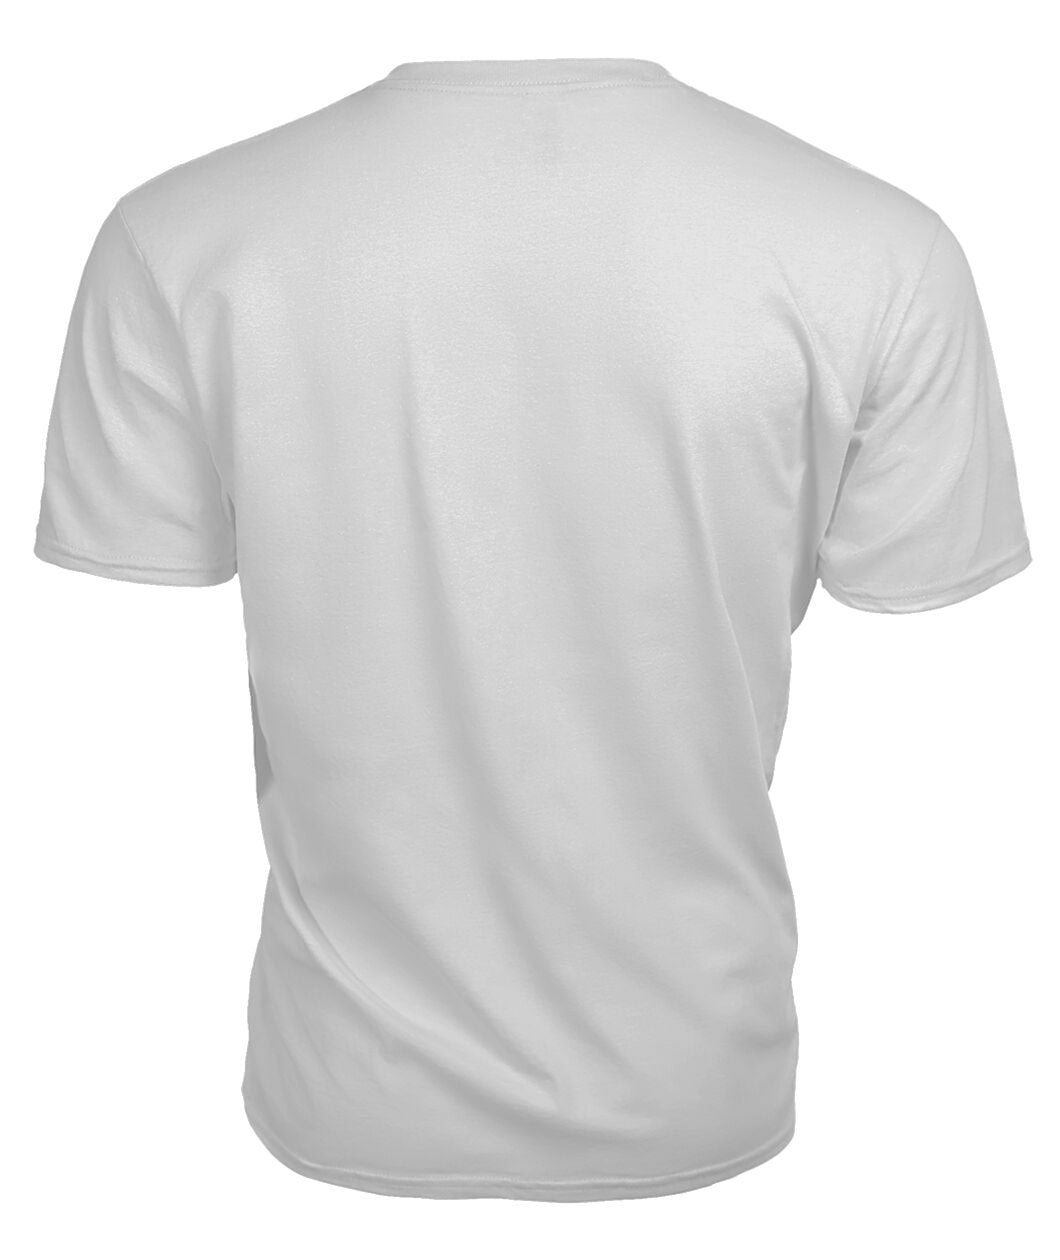 Ged Tartan Crest 2D T-shirt - Blood Runs Through My Veins Style